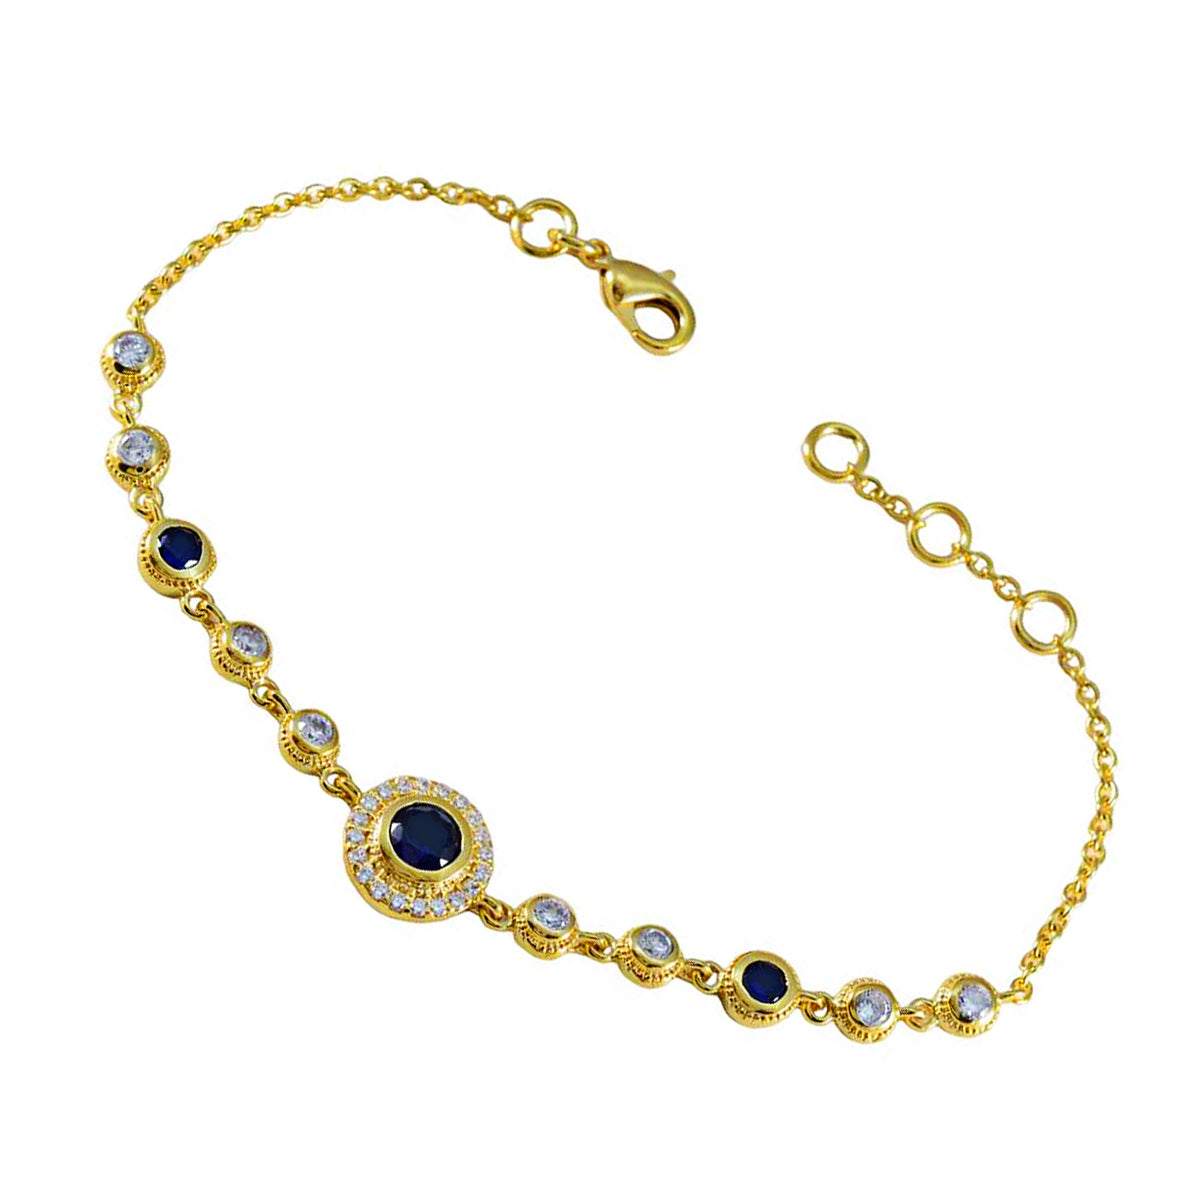 Riyo komplettes Armband aus 925er-Sterlingsilber mit vergoldetem Armband für Mädchen, blaues Supphire-CZ-Armband mit Lünettenfassung und Fischhaken-Glieder-Charm-Armband, Größe L, 15,2–21,6 cm.